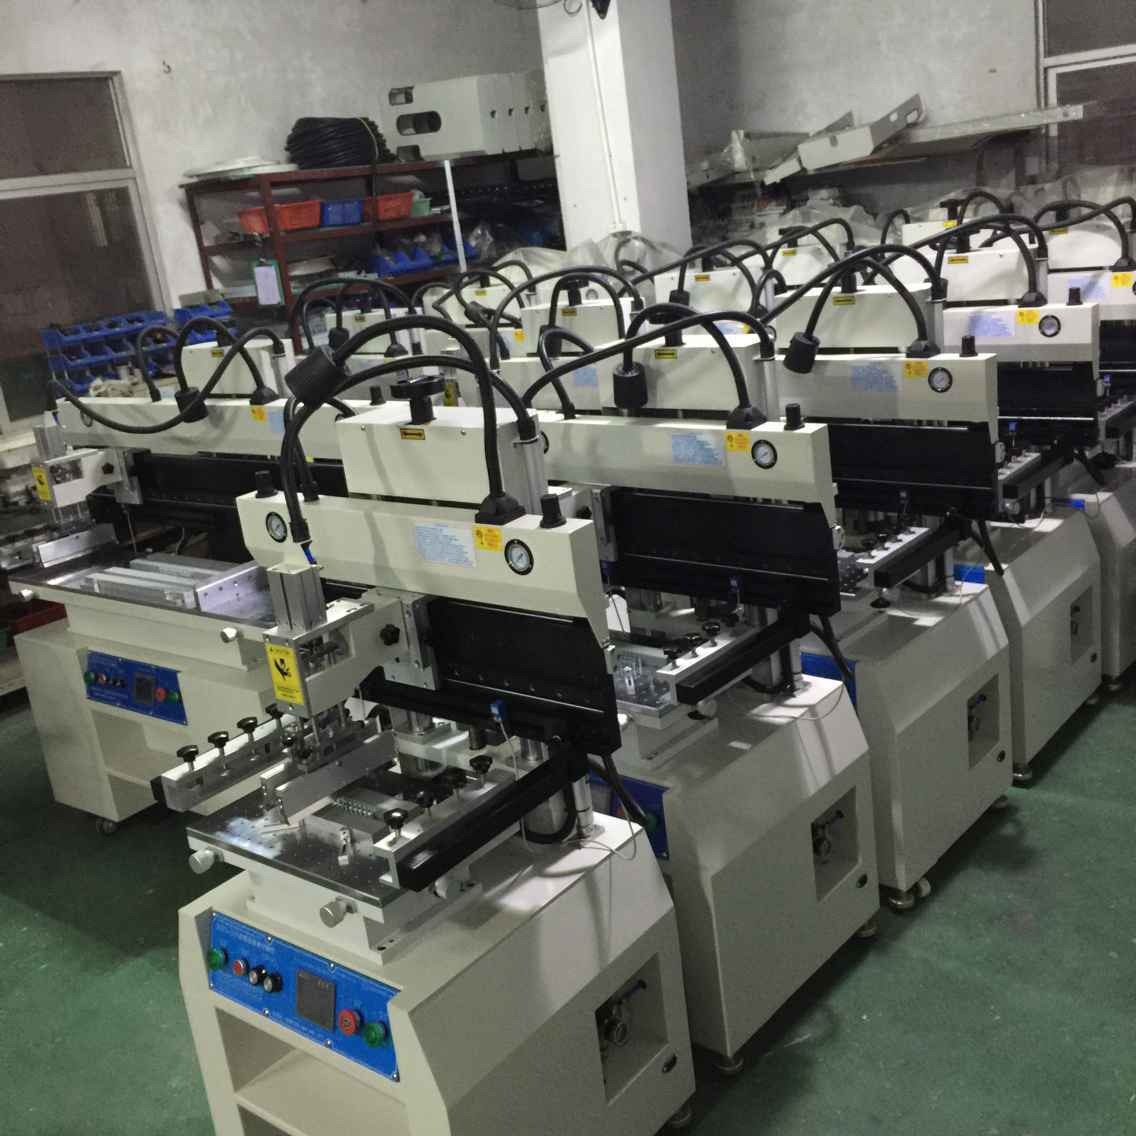 琦琦自动化  深圳生产QQYS-3250半自动锡膏印刷机  PCB锡膏印刷机  SMT丝印机